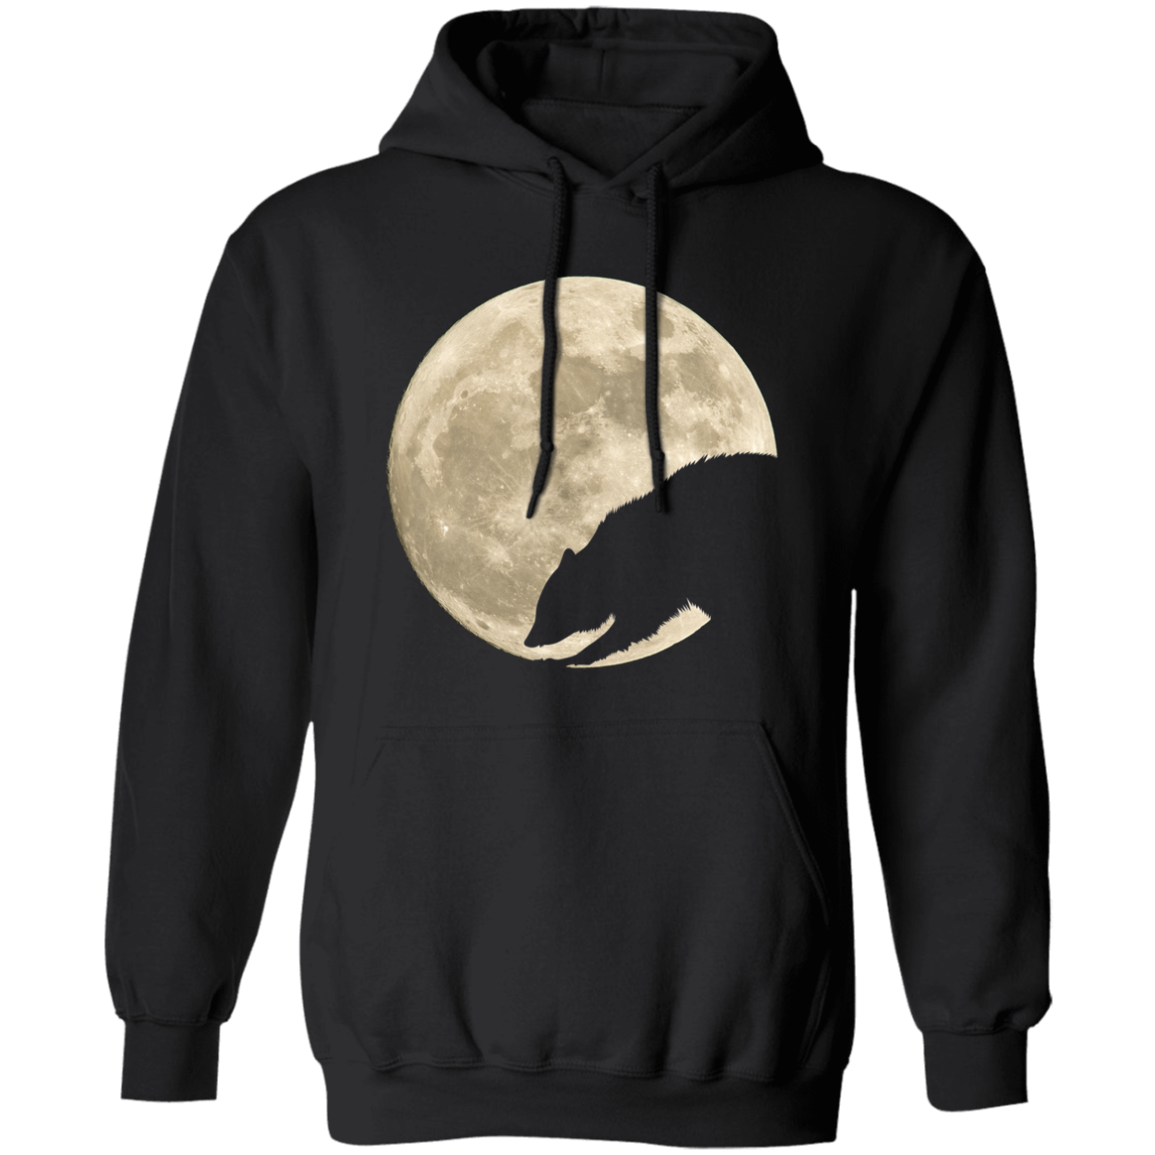 Raccoon Moon - T-shirts, Hoodies and Sweatshirts